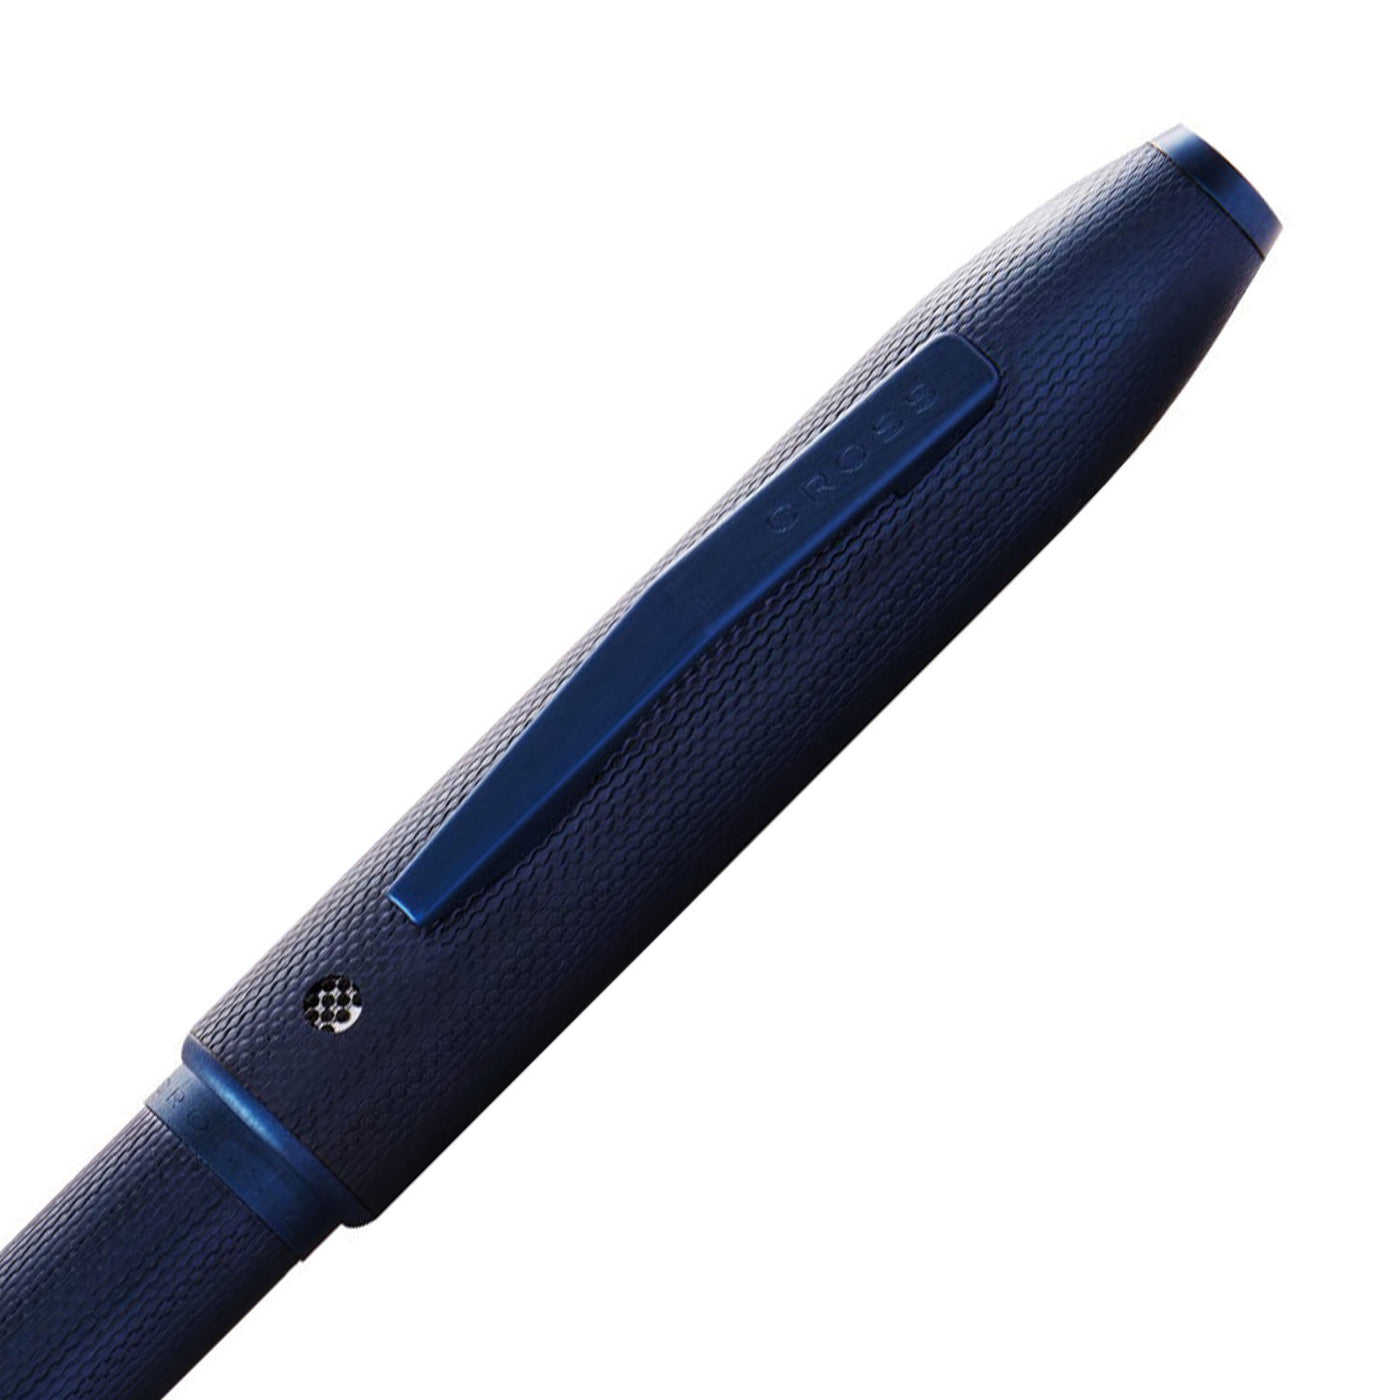 Cross Tech4 Multifunction Ball Pen - Textured Blue PVD 3